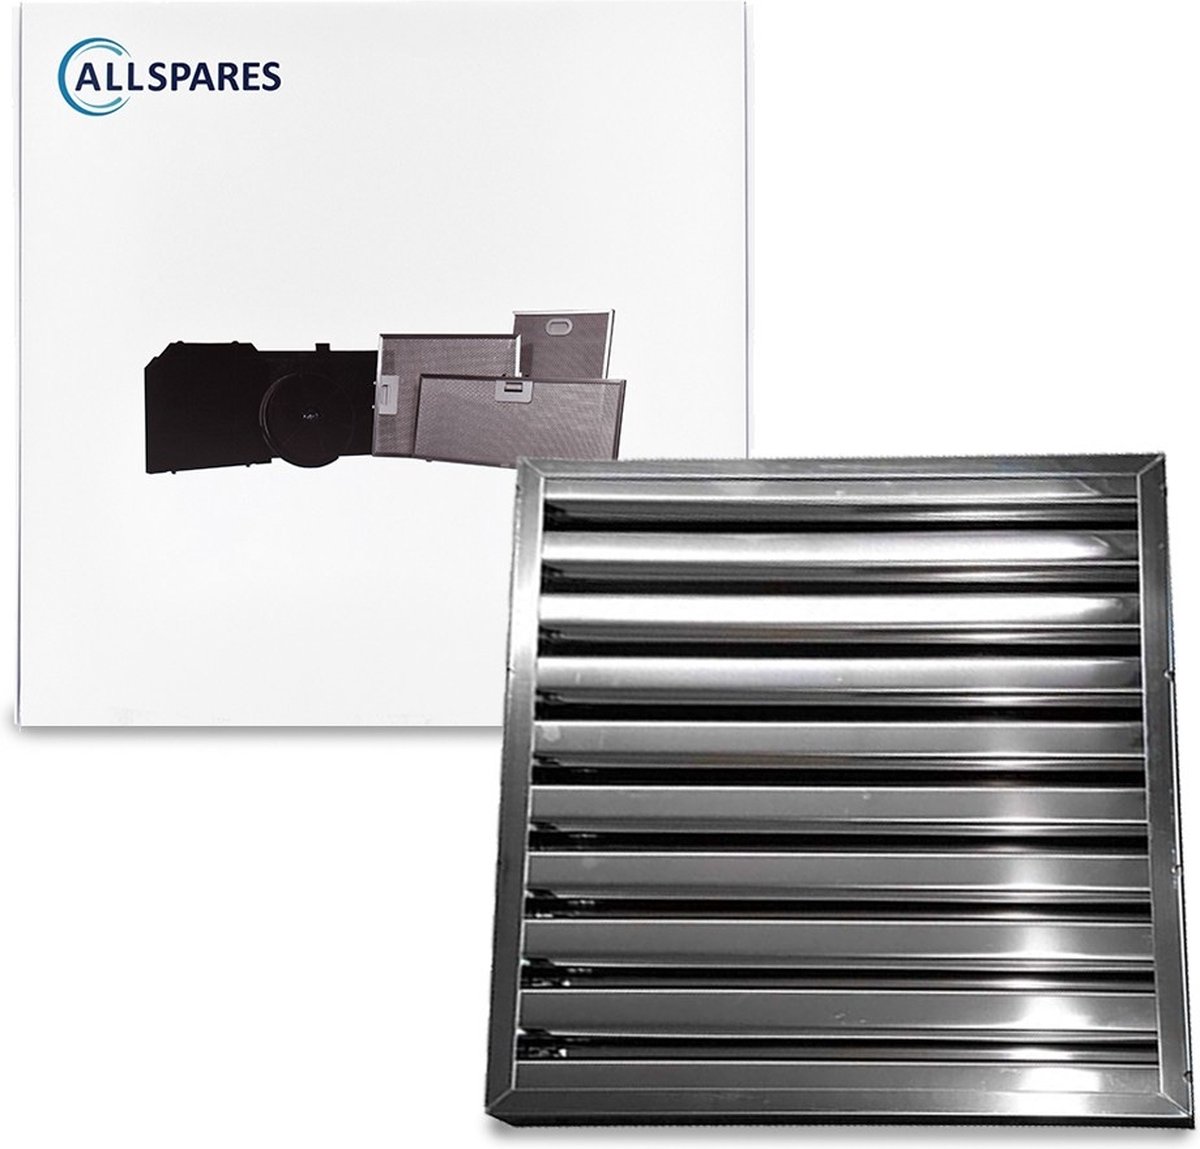 AllSpares Lamellenfilter zonder handgrepen geschikt voor Horeca Afzuigkappen Type B (400x500x25mm)